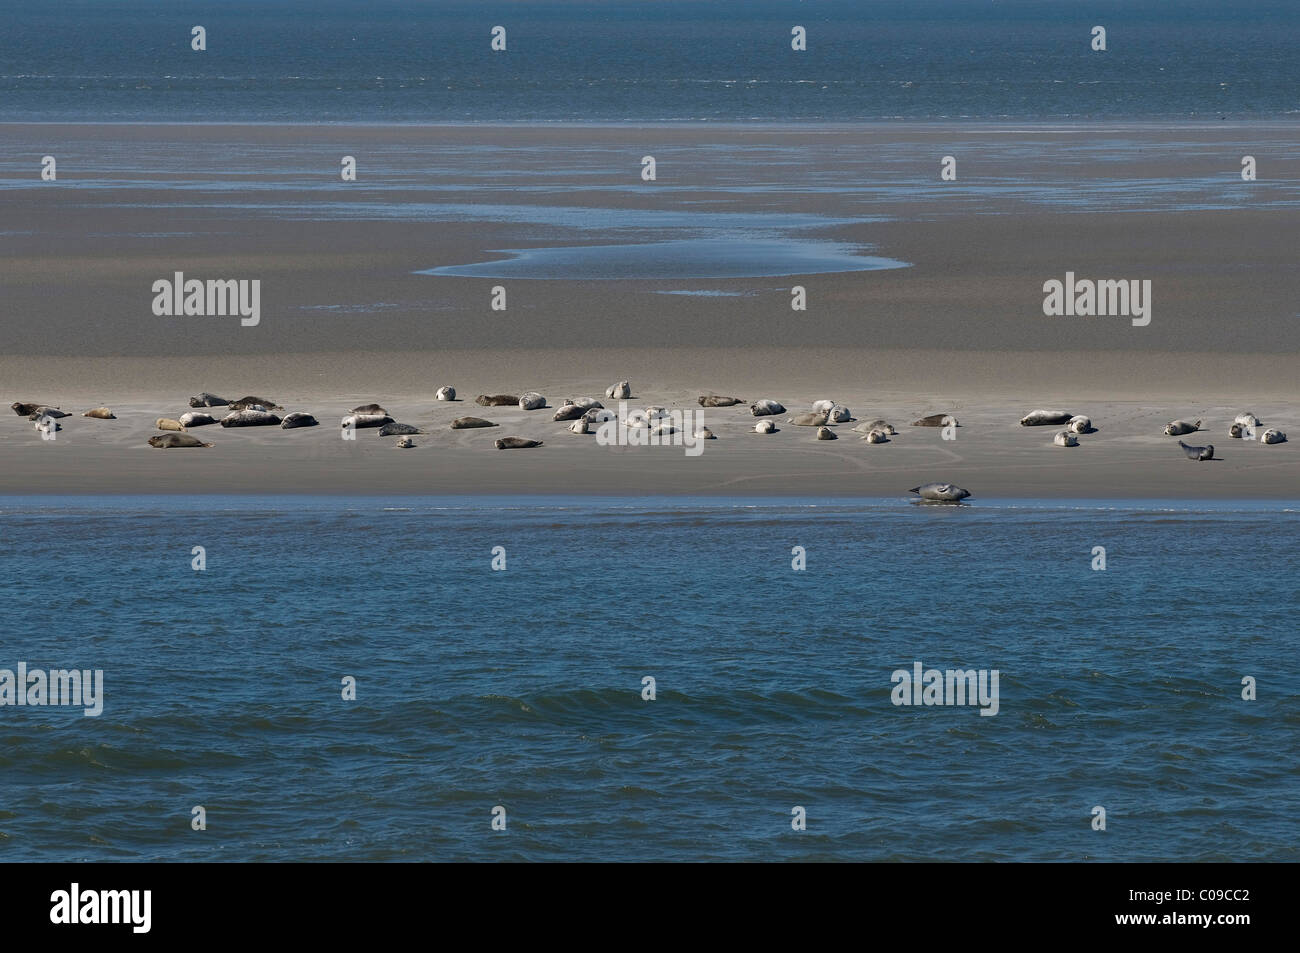 Juntas (Phoca vitulina descanso) en los bancos de arena en el Mar de Wadden, Mar del Norte, sitio del Patrimonio Mundial de la UNESCO, el Parque Nacional del Mar de Wadden Foto de stock